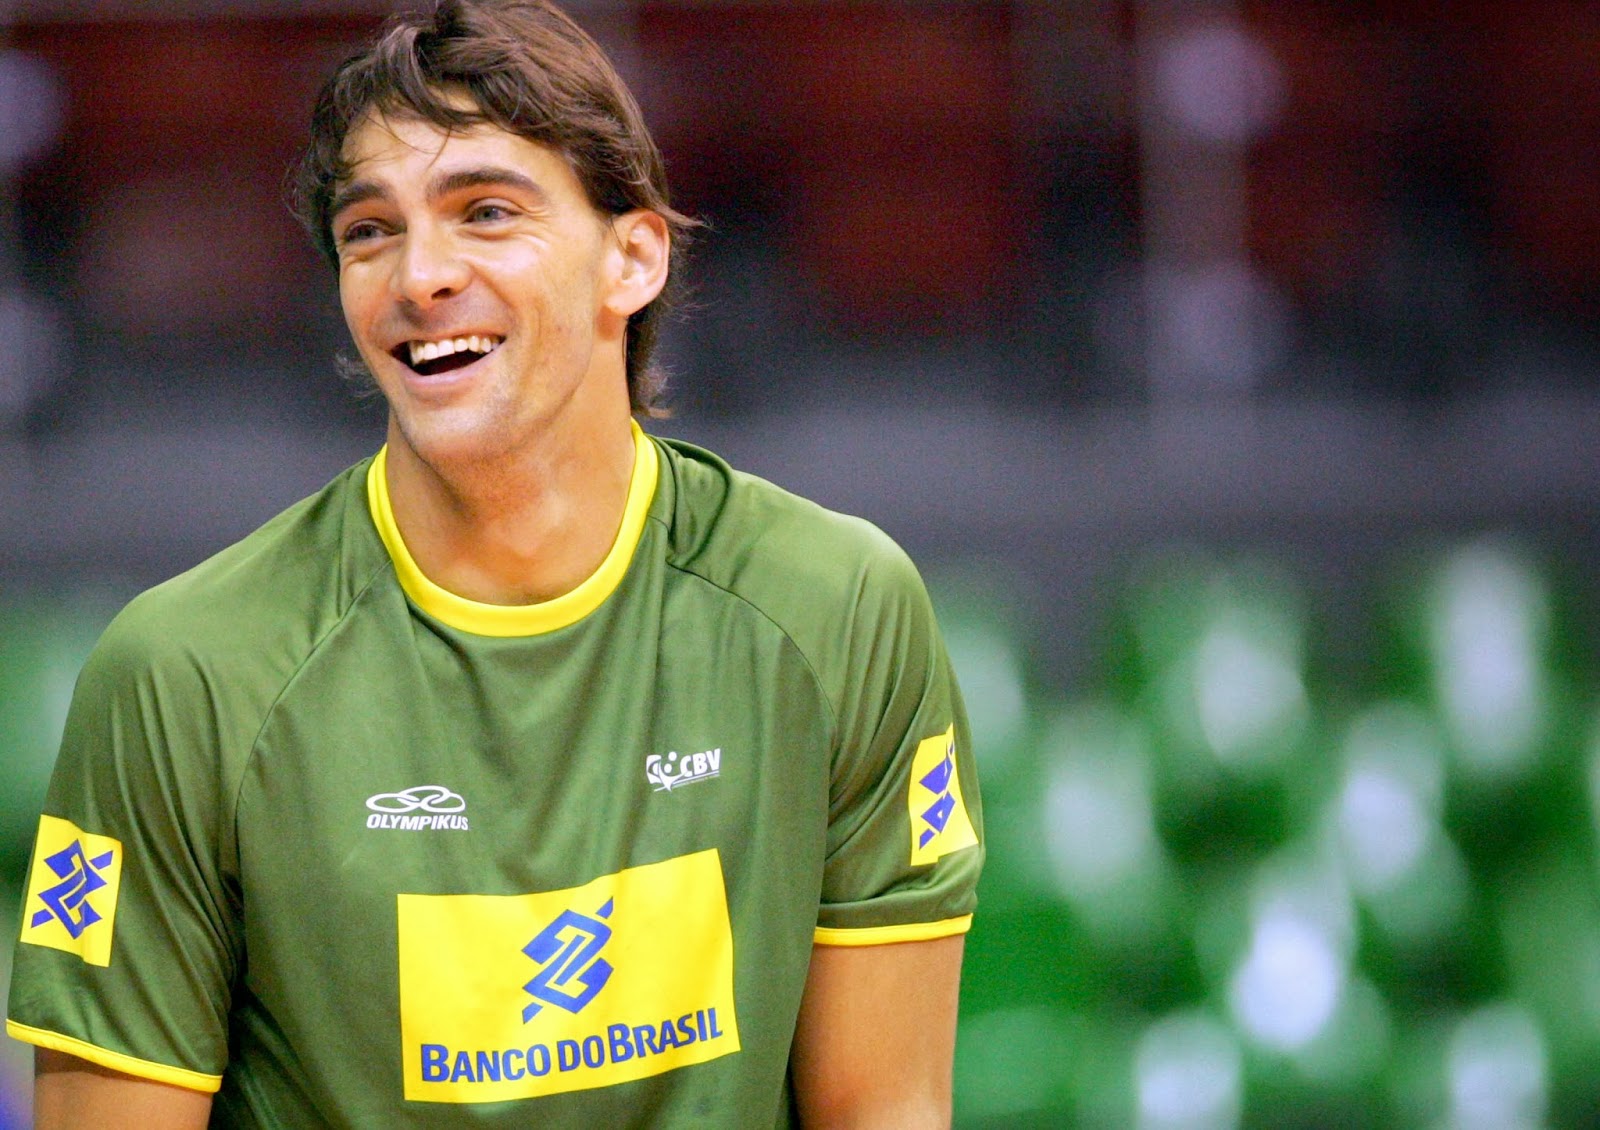 Padrinho da FDEPR, Giba é eleito melhor jogador de vôlei brasileiro de todos  os tempos